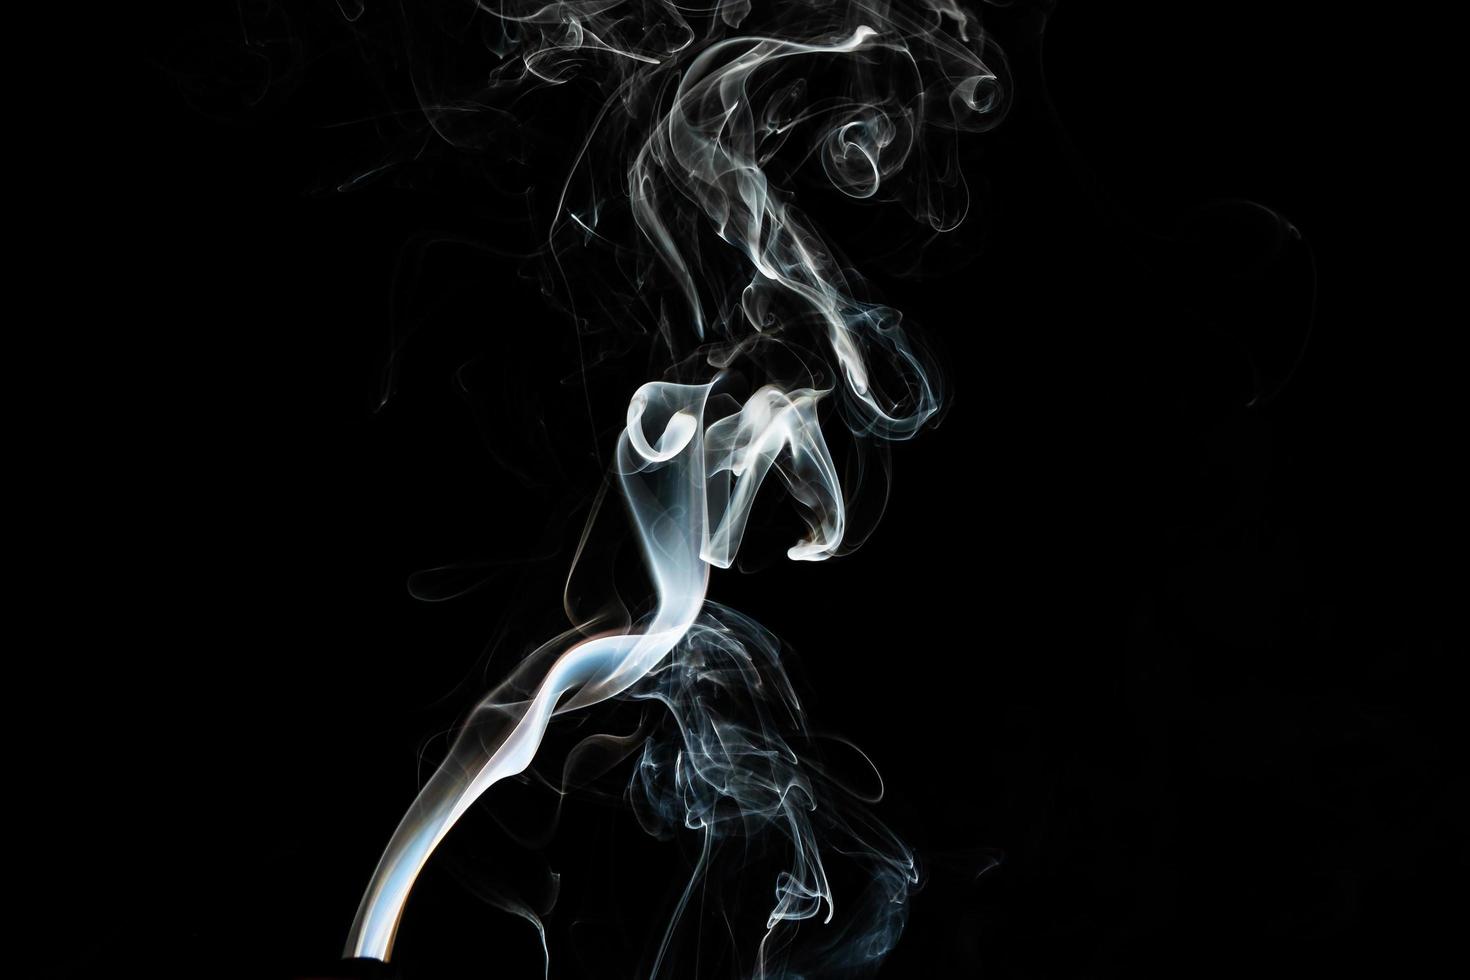 textura efecto humo. fondo aislado. telón de fondo negro y oscuro. fuego ahumado y efecto místico. foto